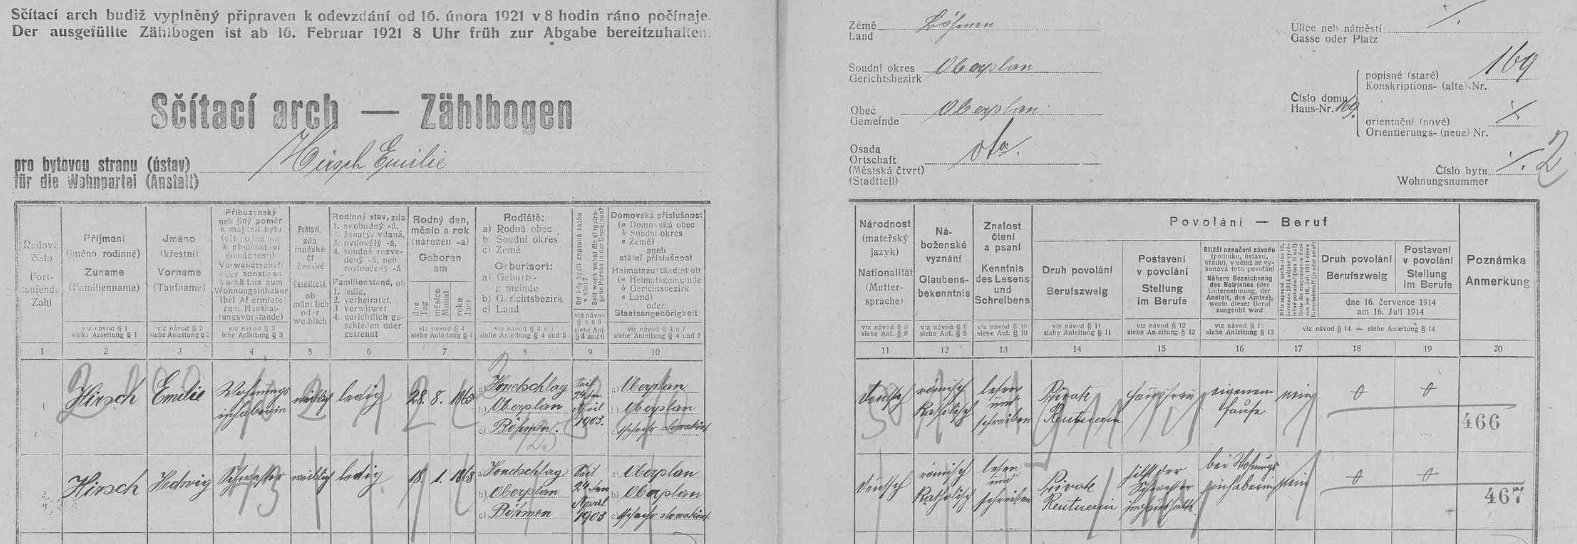 V roce 1921 bydlily podle toho archu sčítání lidu v domě čp. 169 Emilie Hirschová (*28. srpna 1865 v Hodňově) a její sestra Hedwig, obě "Private Rentnerin", tj. "soukromé důchodkyně"